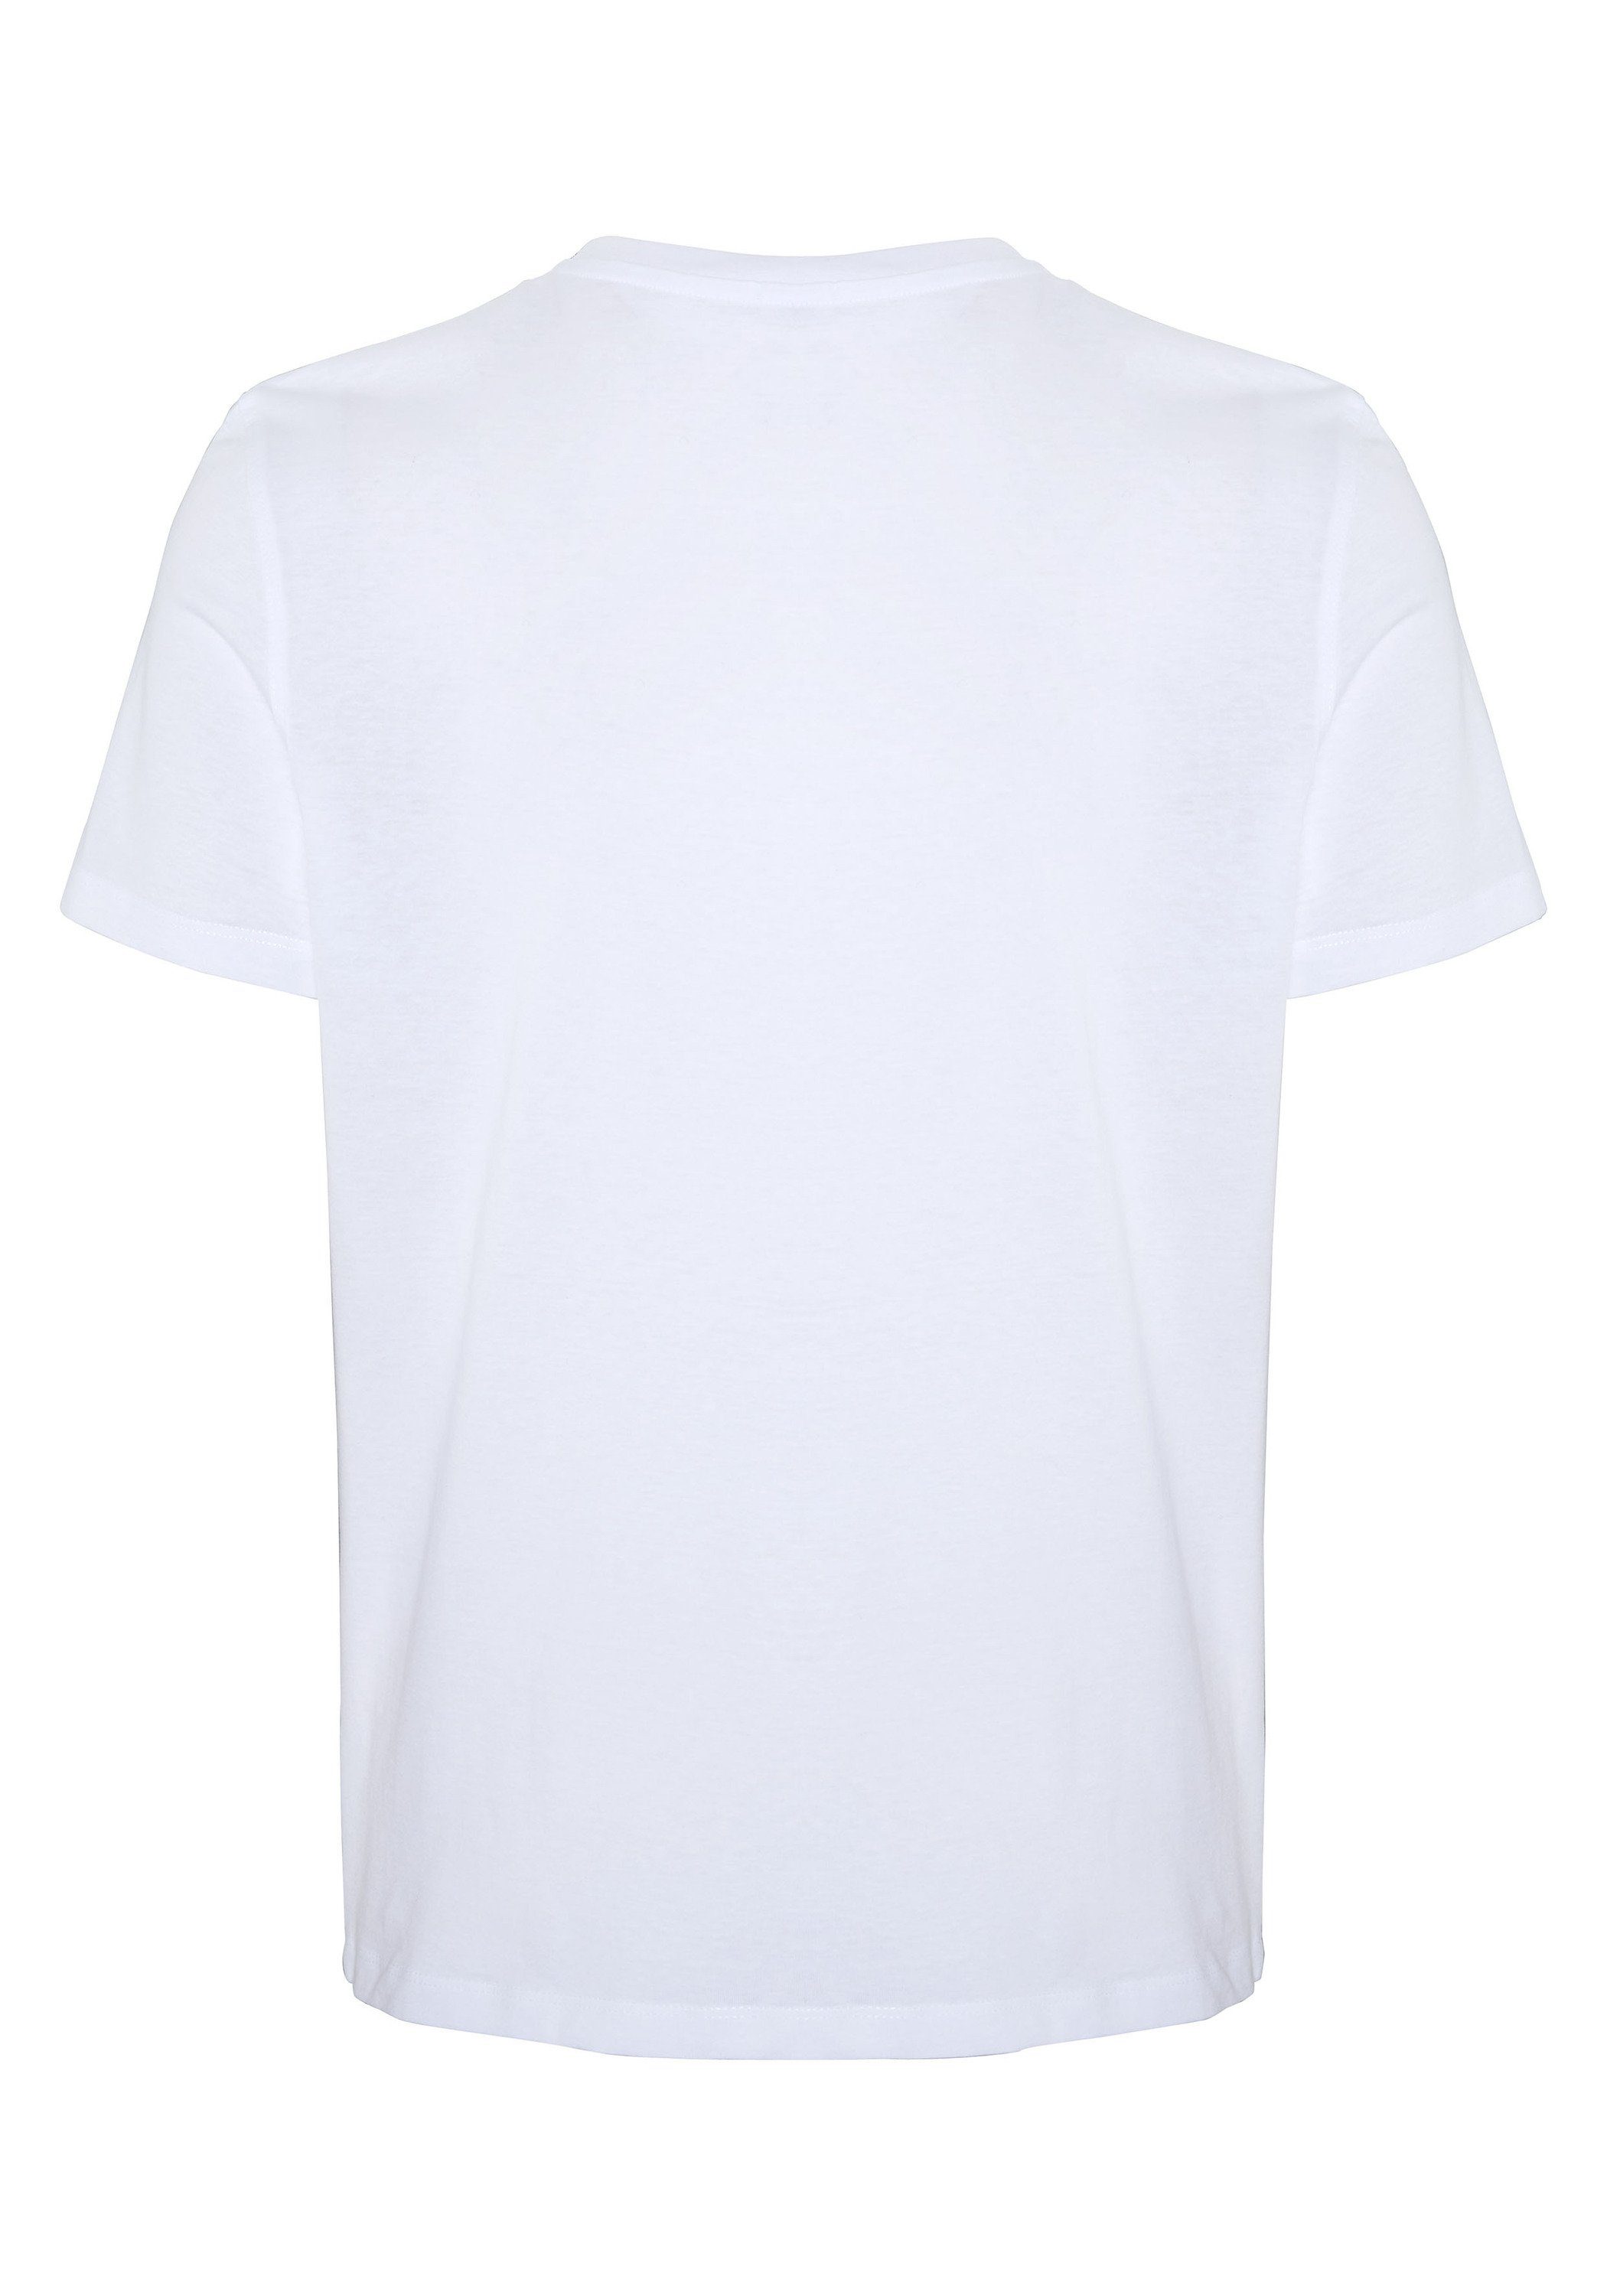 White weicher aus 11-0601 Sweatware Print-Shirt DENIM Bright COLORADO